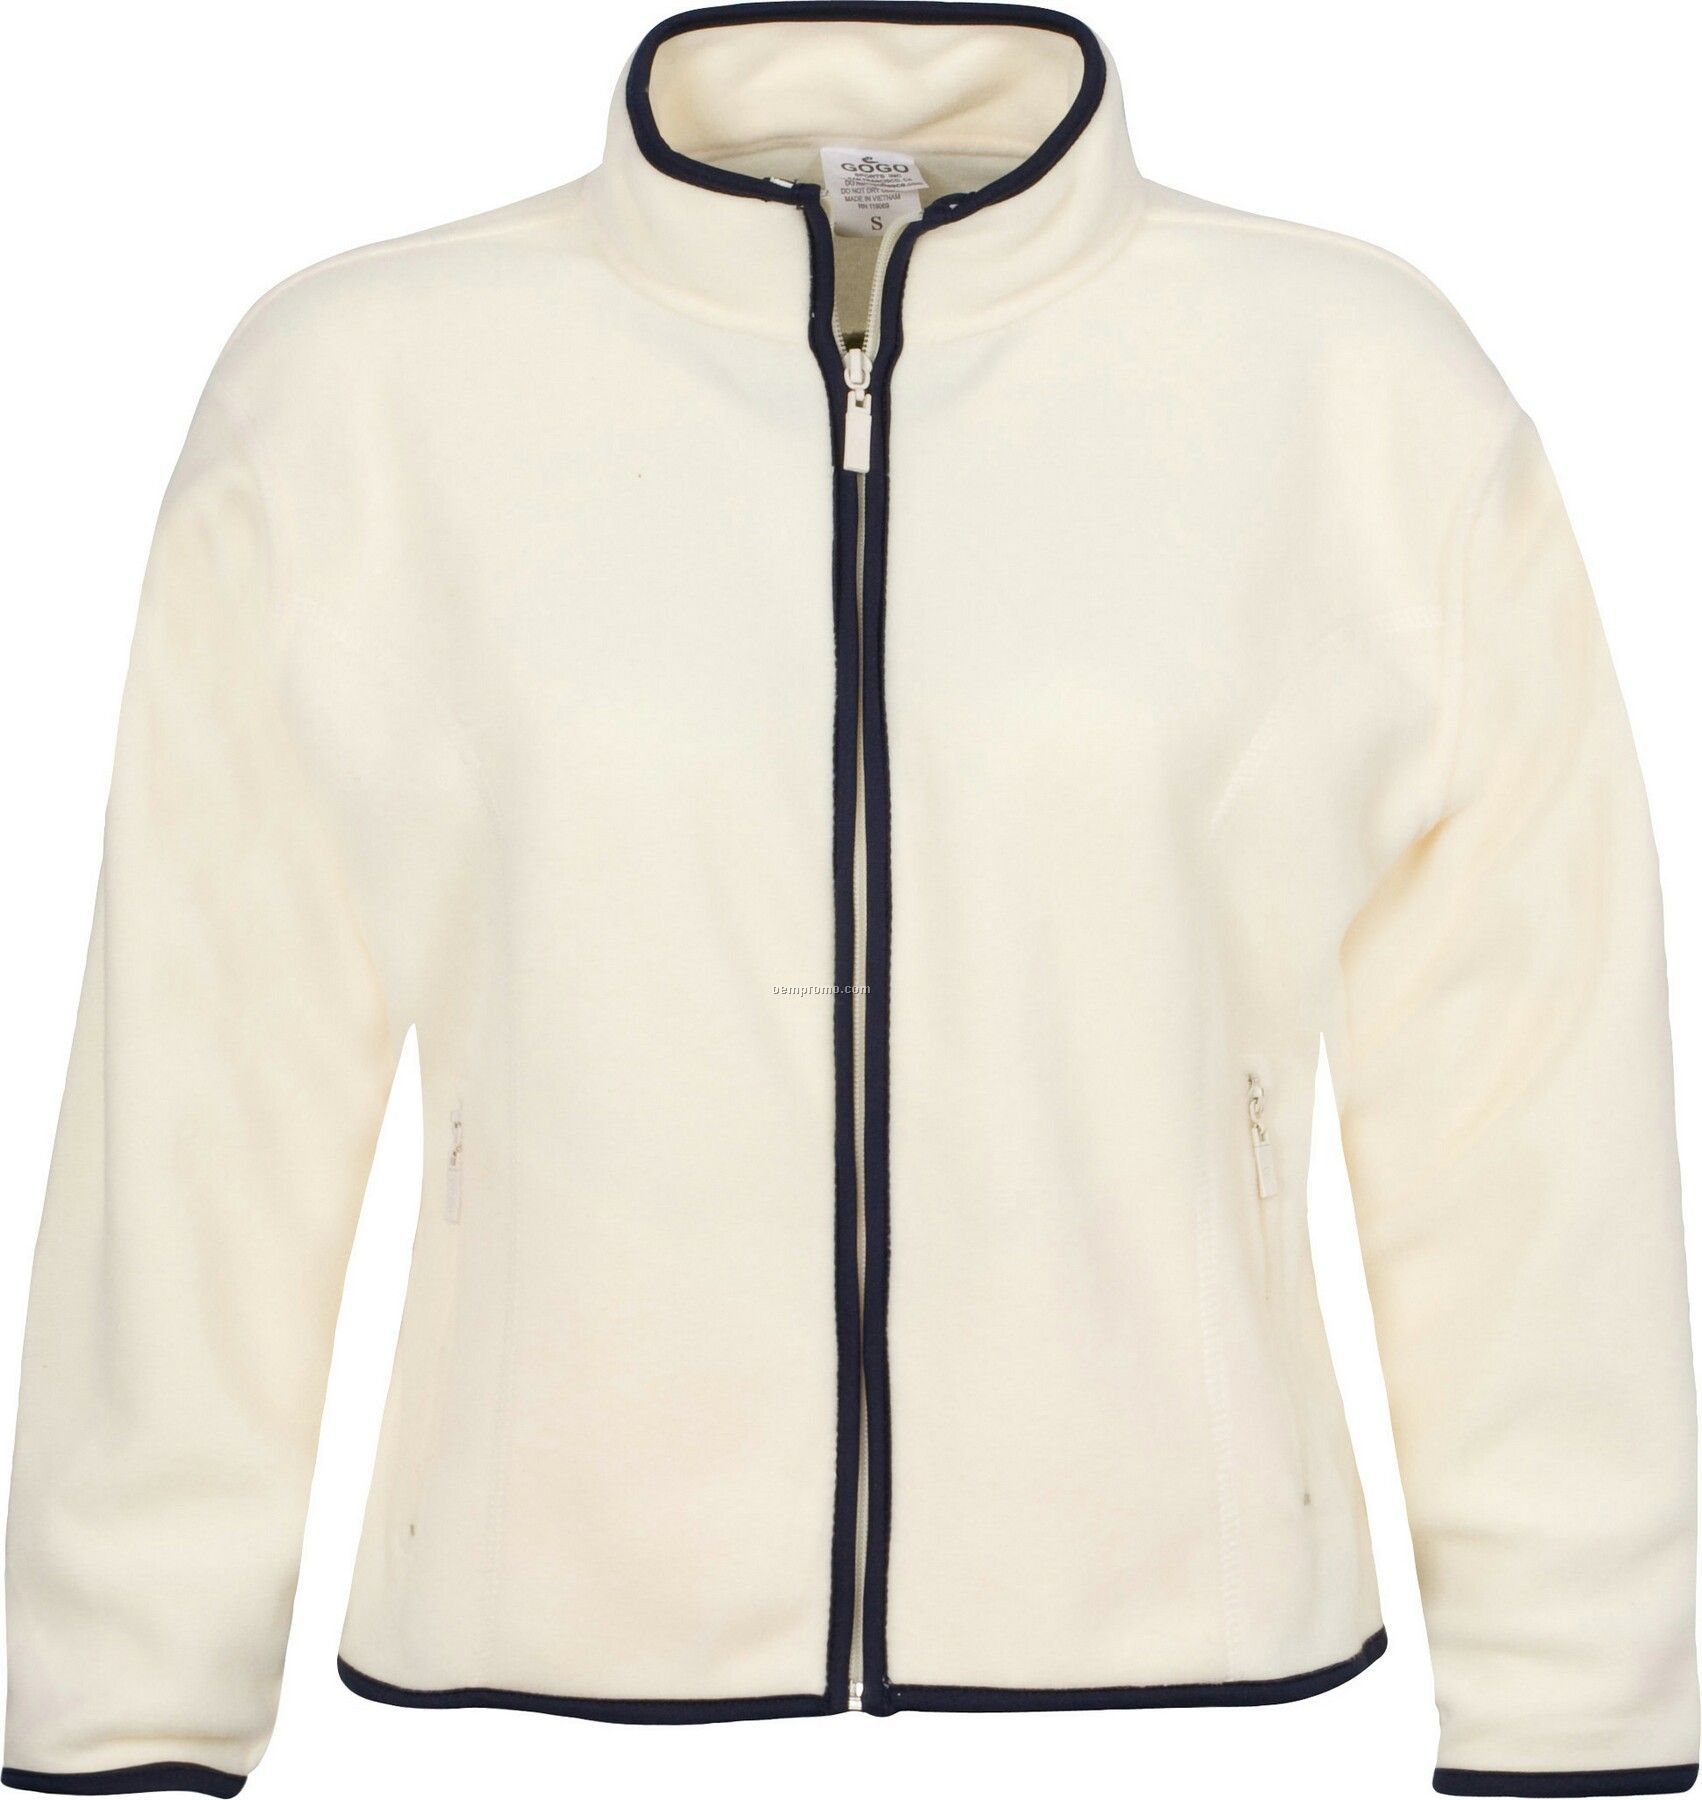 Ladies Cut Full-zip Fleece Jacket